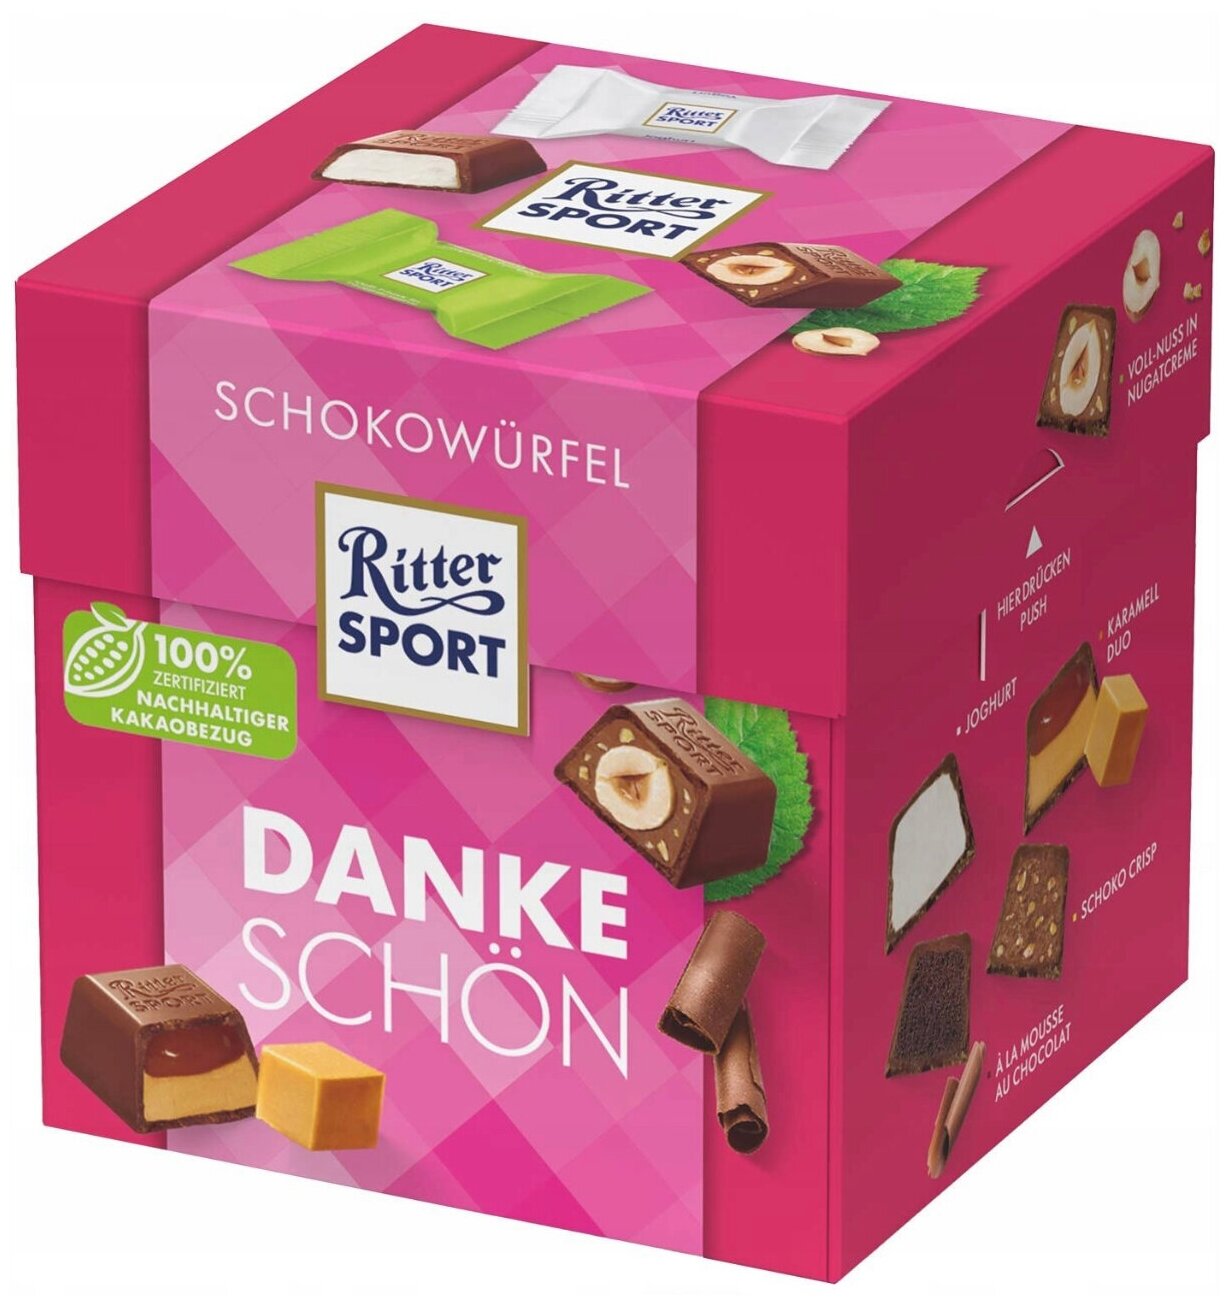 Набор мини-шоколад Ritter sport DANKE SCHON, Шоколадные конфеты ассорти (Германия), 176гр - фотография № 1